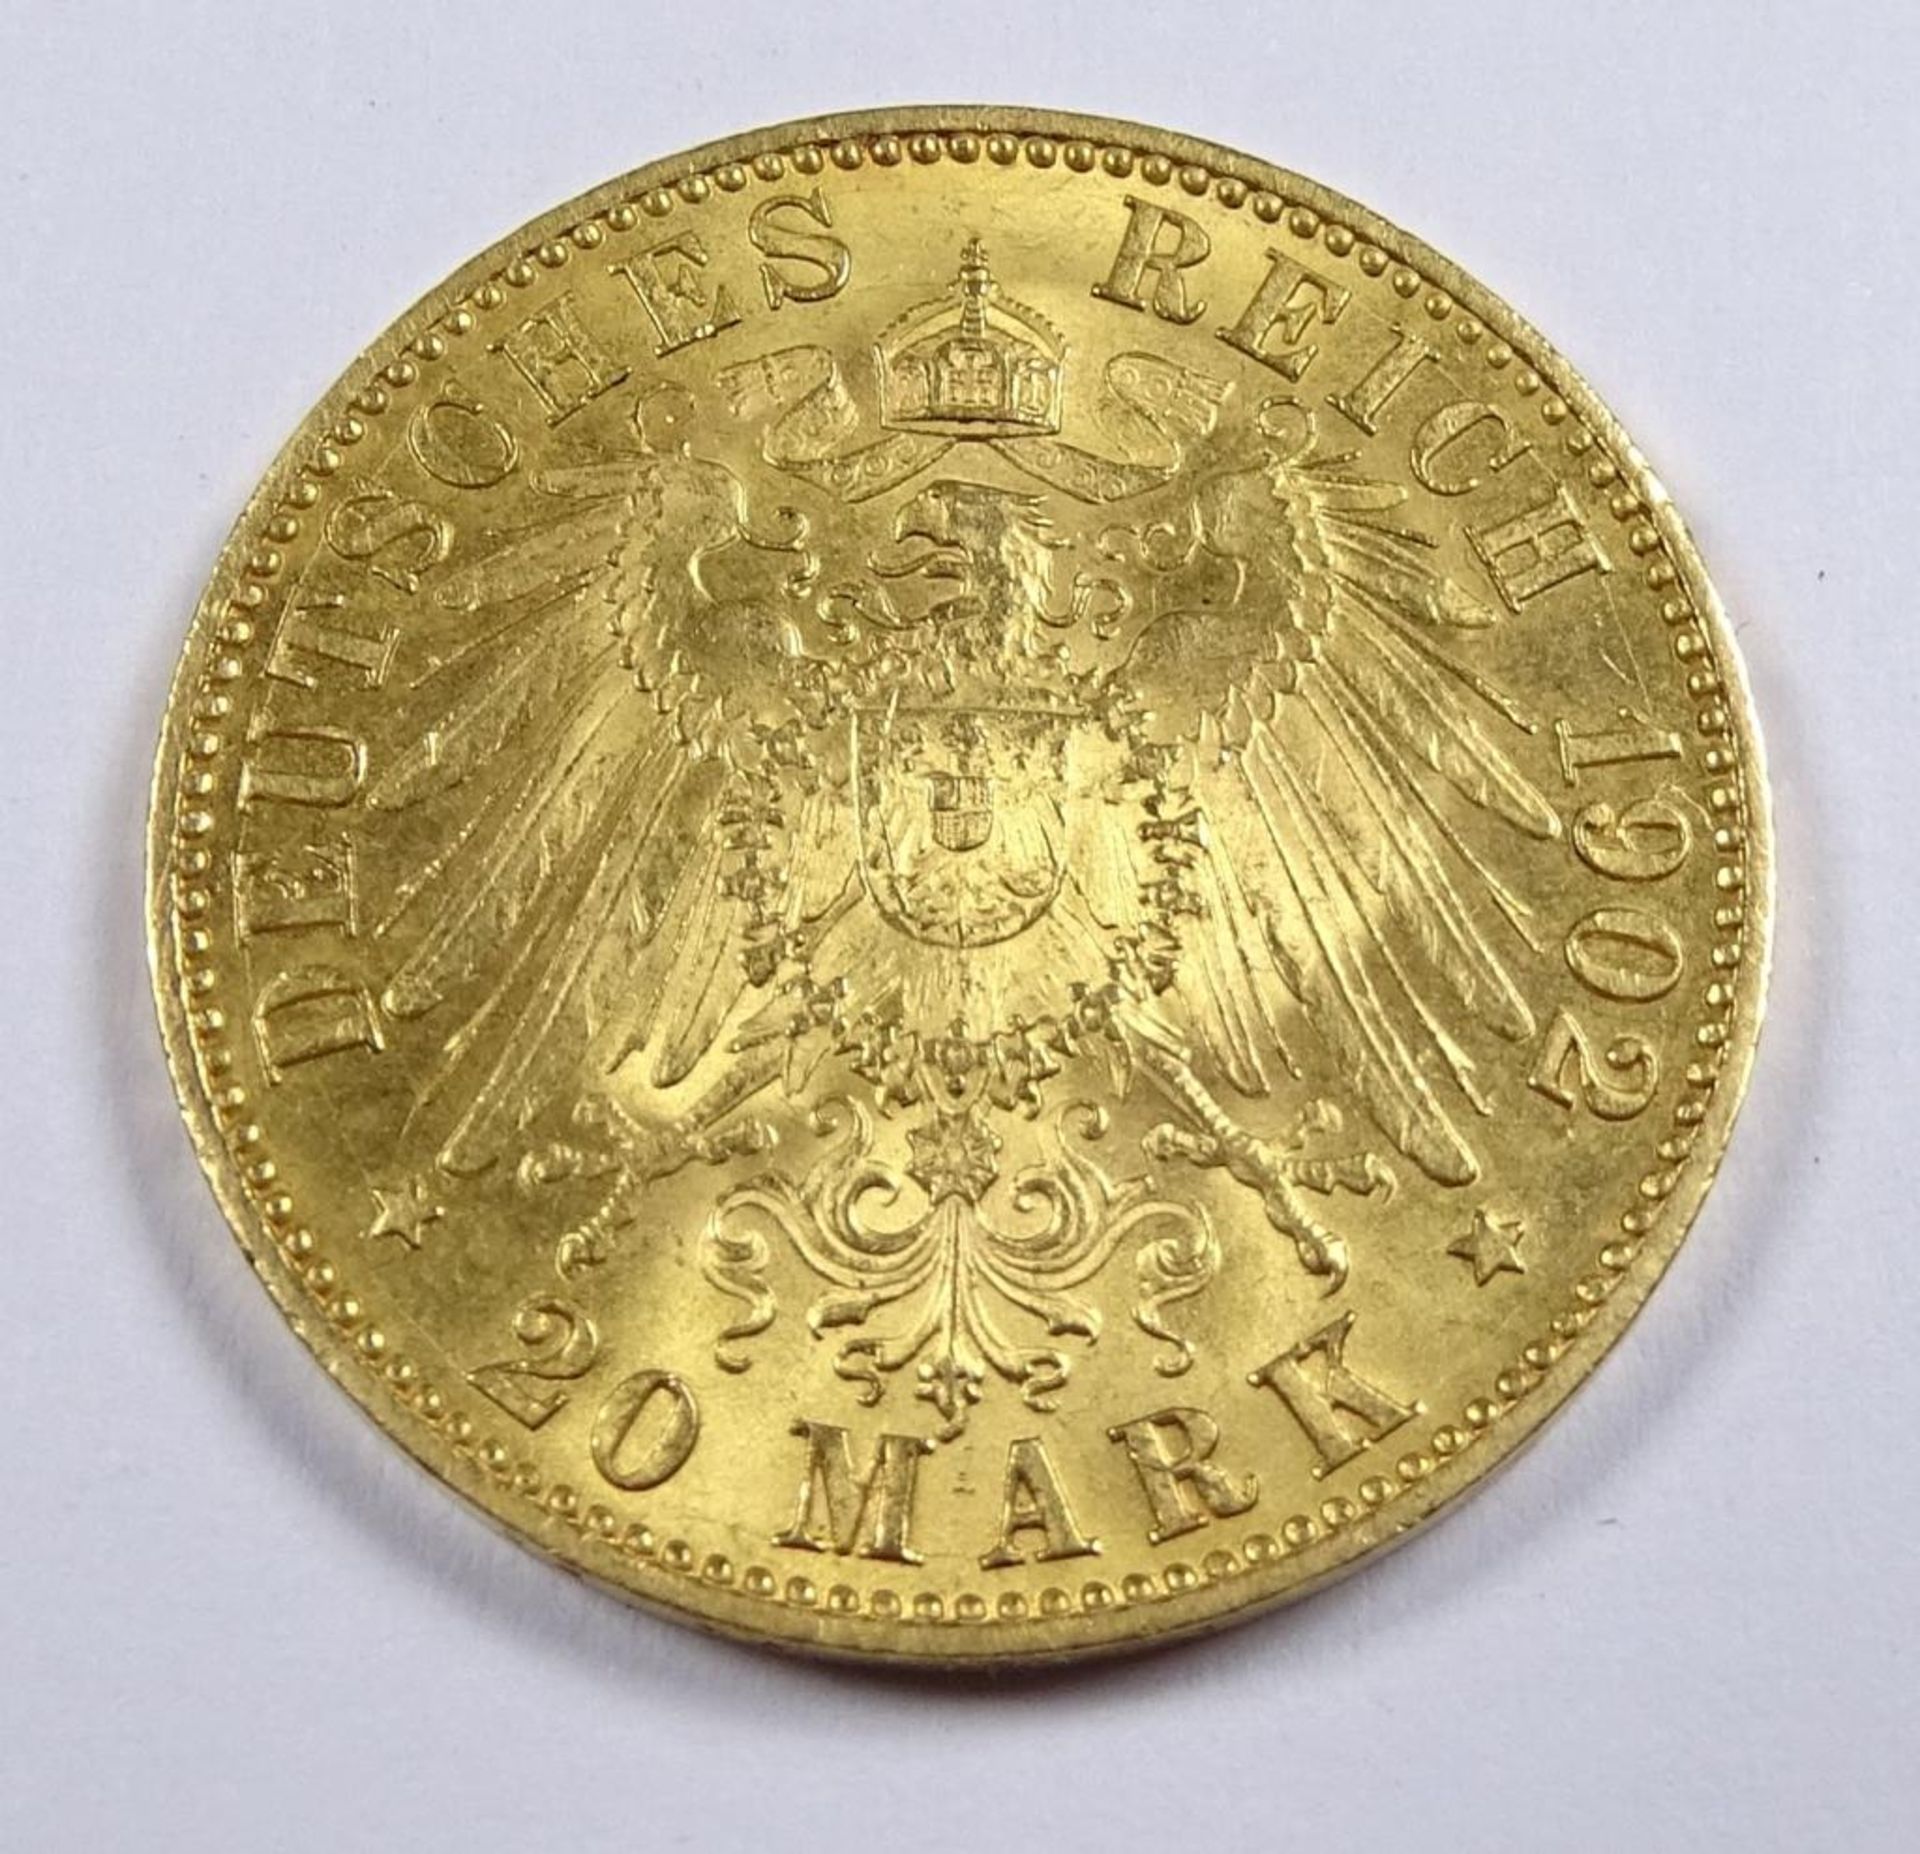 Goldmünze, 20 Mark 1902 A, Deutsches Reich, König v. Preussen, d-22mm, 7,94g